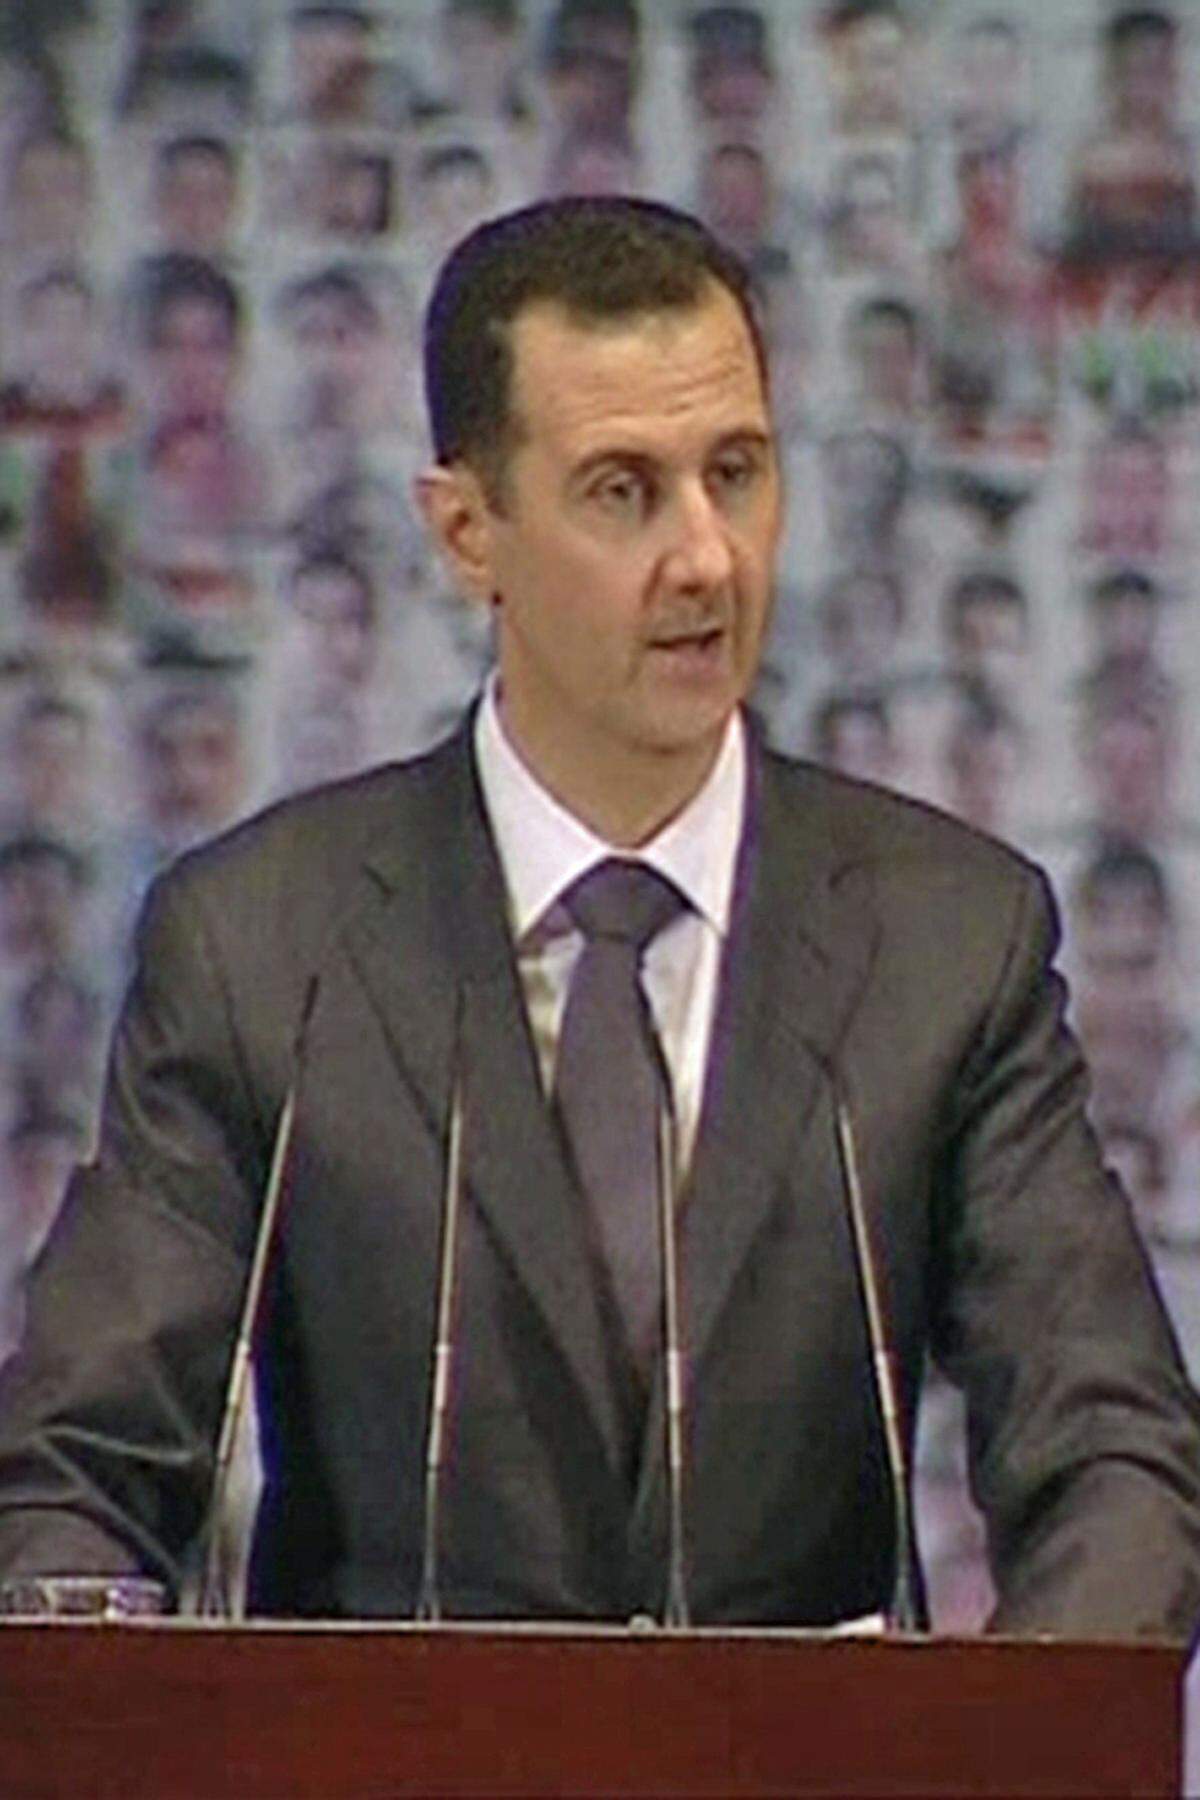 Am 6. Jänner stellte sich Assad nach Monaten wieder der Öffentlichkeit. In einer TV-Ansprache nannte er die Oppositionellen "Killer". "Es ist ein Konflikt zwischen dem Volk auf der einen Seite und Killern und Kriminellen auf der anderen Seite." Weiters rief er zur vollständigen nationalen Mobilisierung auf, um den Aufstand gegen ihn niederzuschlagen. Einen Dialog mit einer "Marionette des Westens" werde es nicht geben.